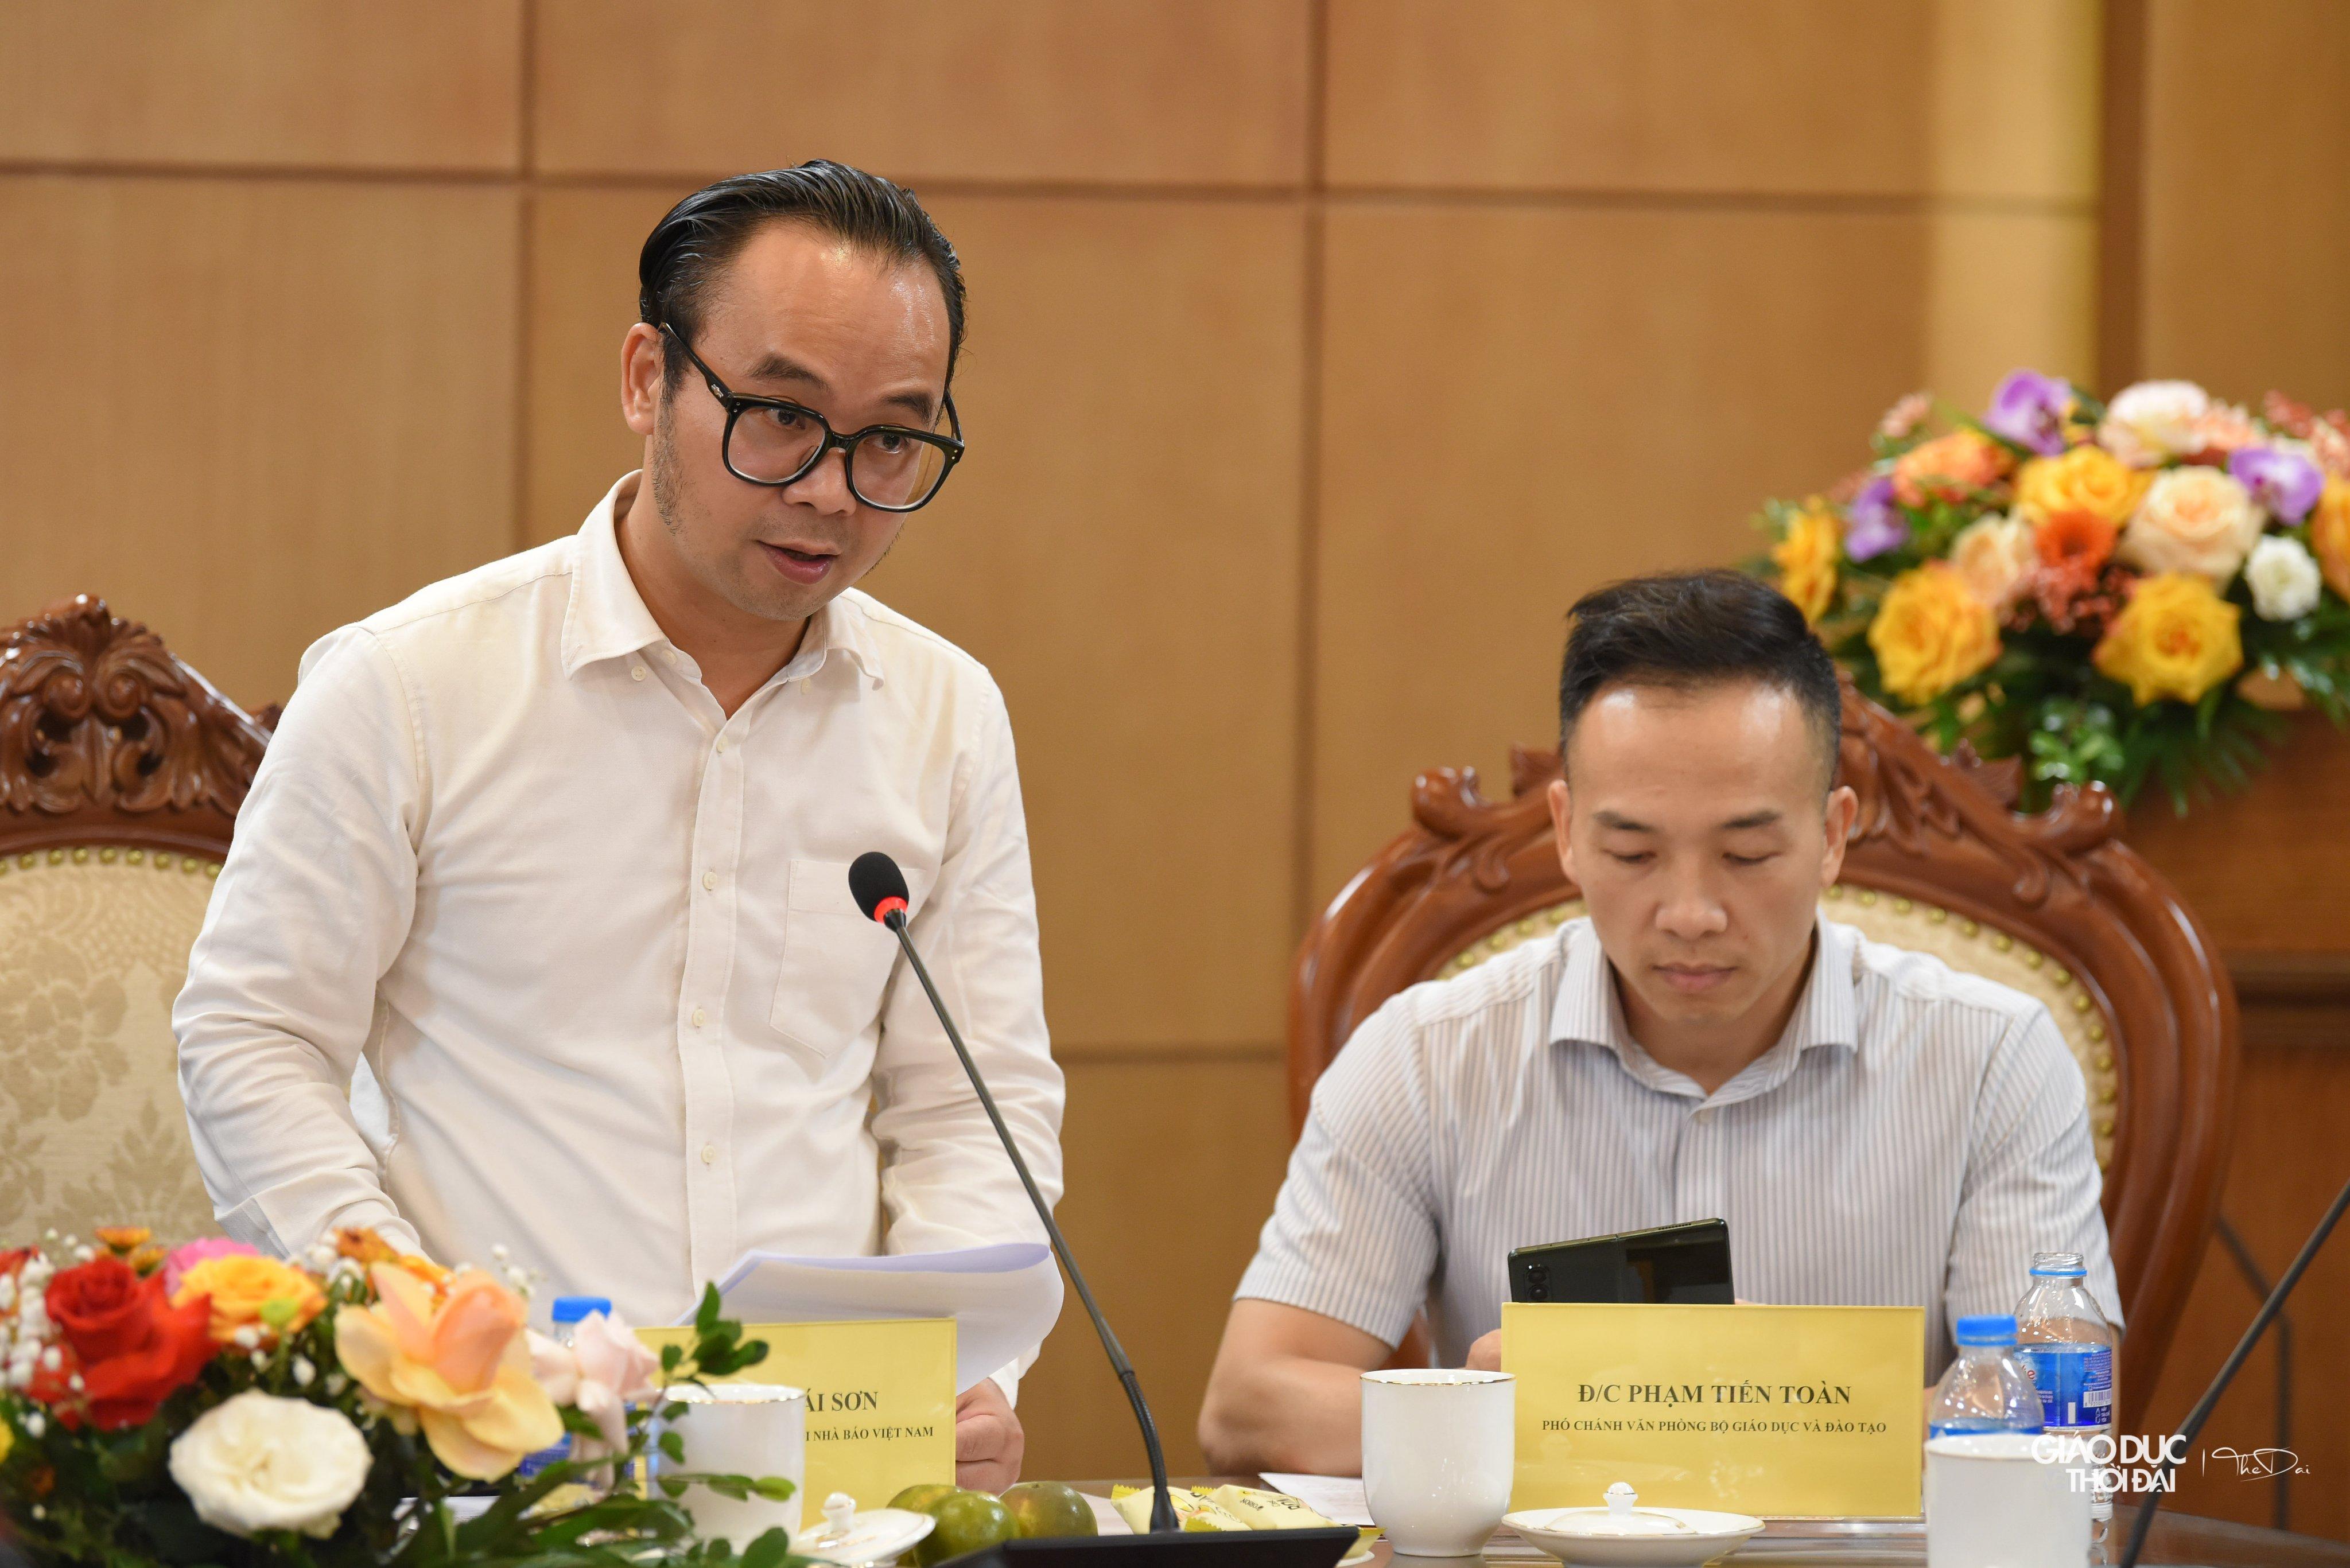 Chủ tịch Hội đồng Sơ khảo Trần Thái Sơn: Nhiều tác phẩm chân thực, lay động lòng người